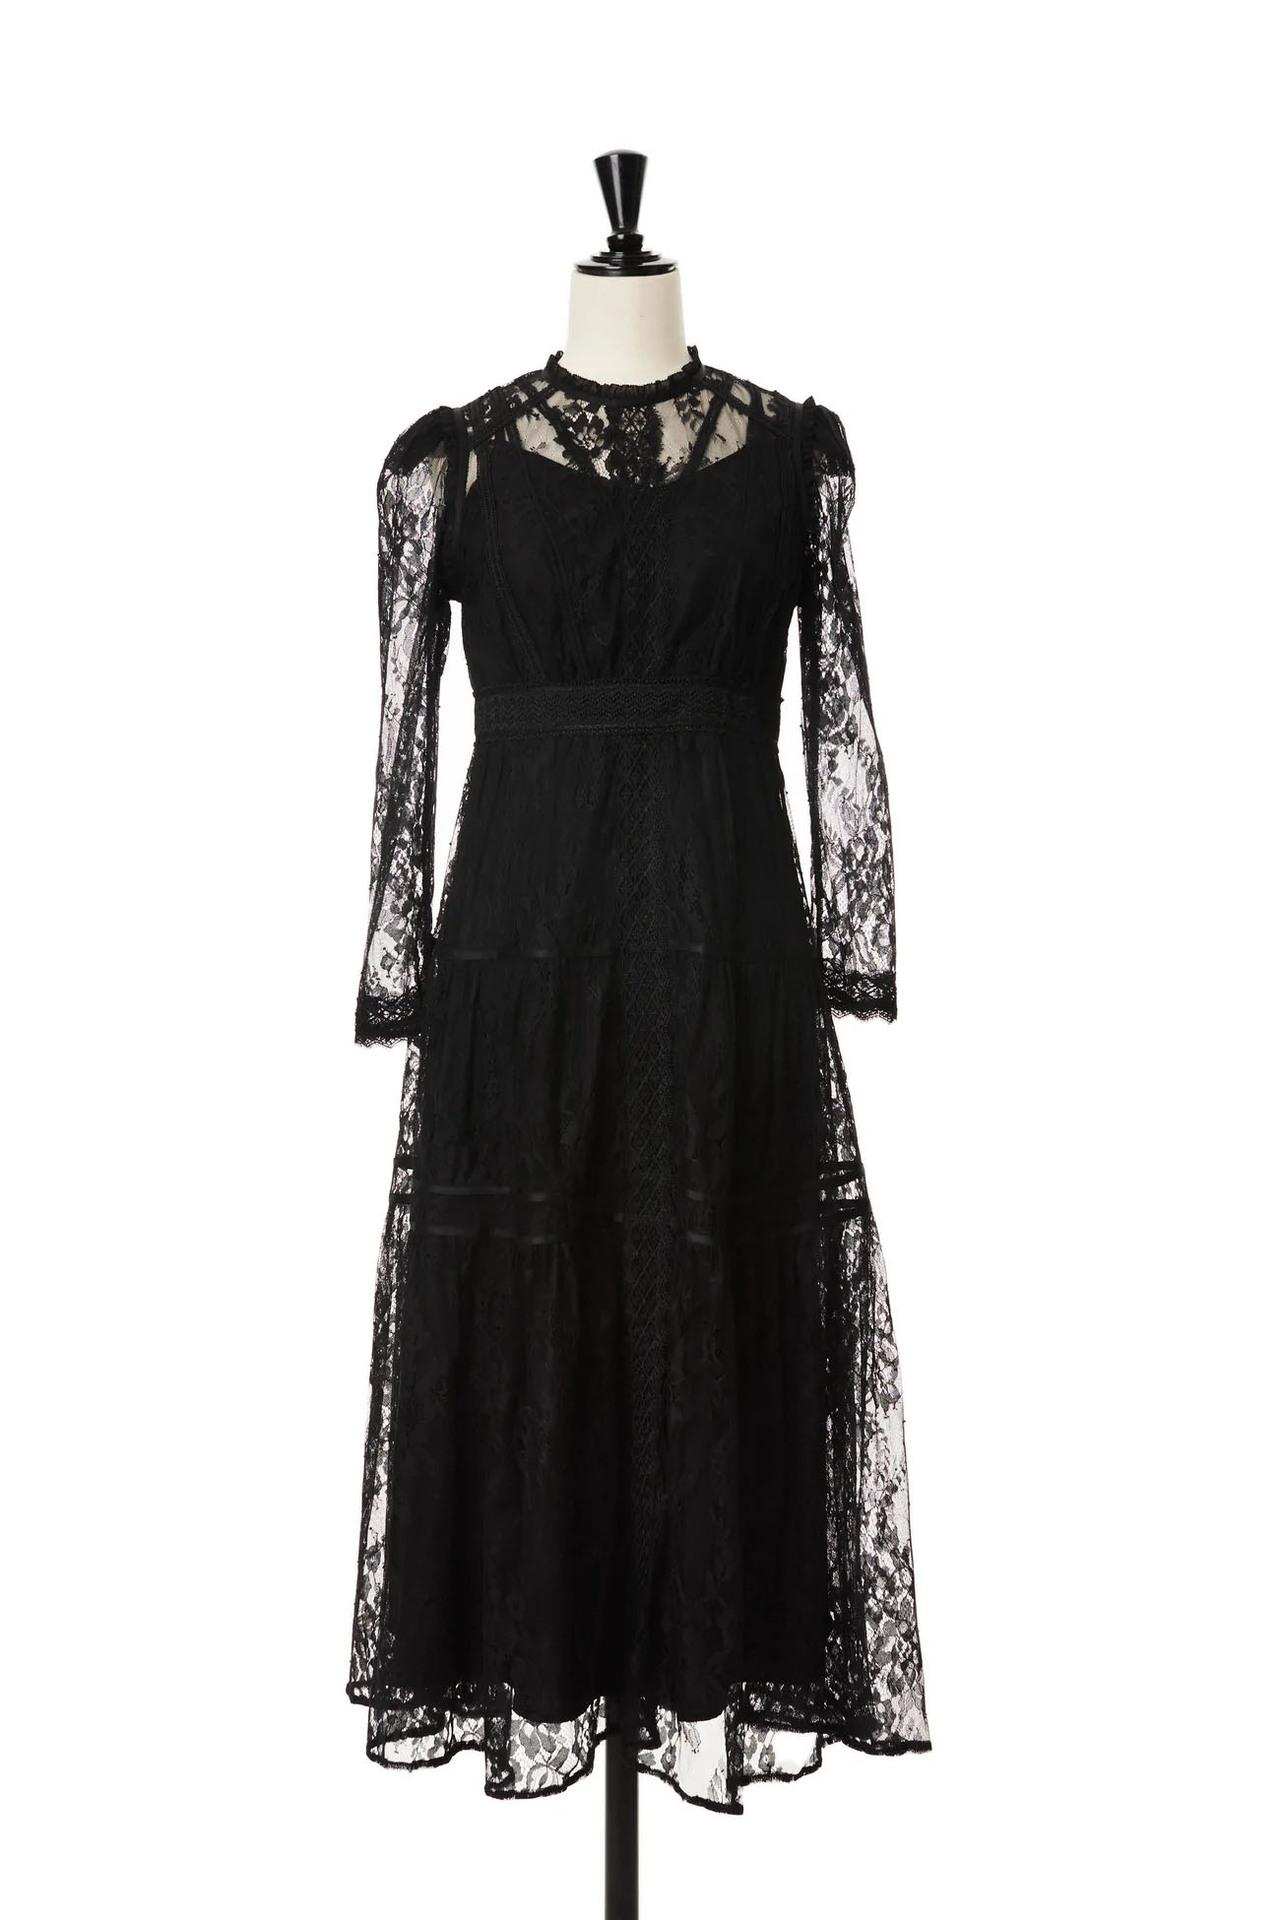 特価高評価Jupiter Lace-Trimming Dress/black/M ワンピース